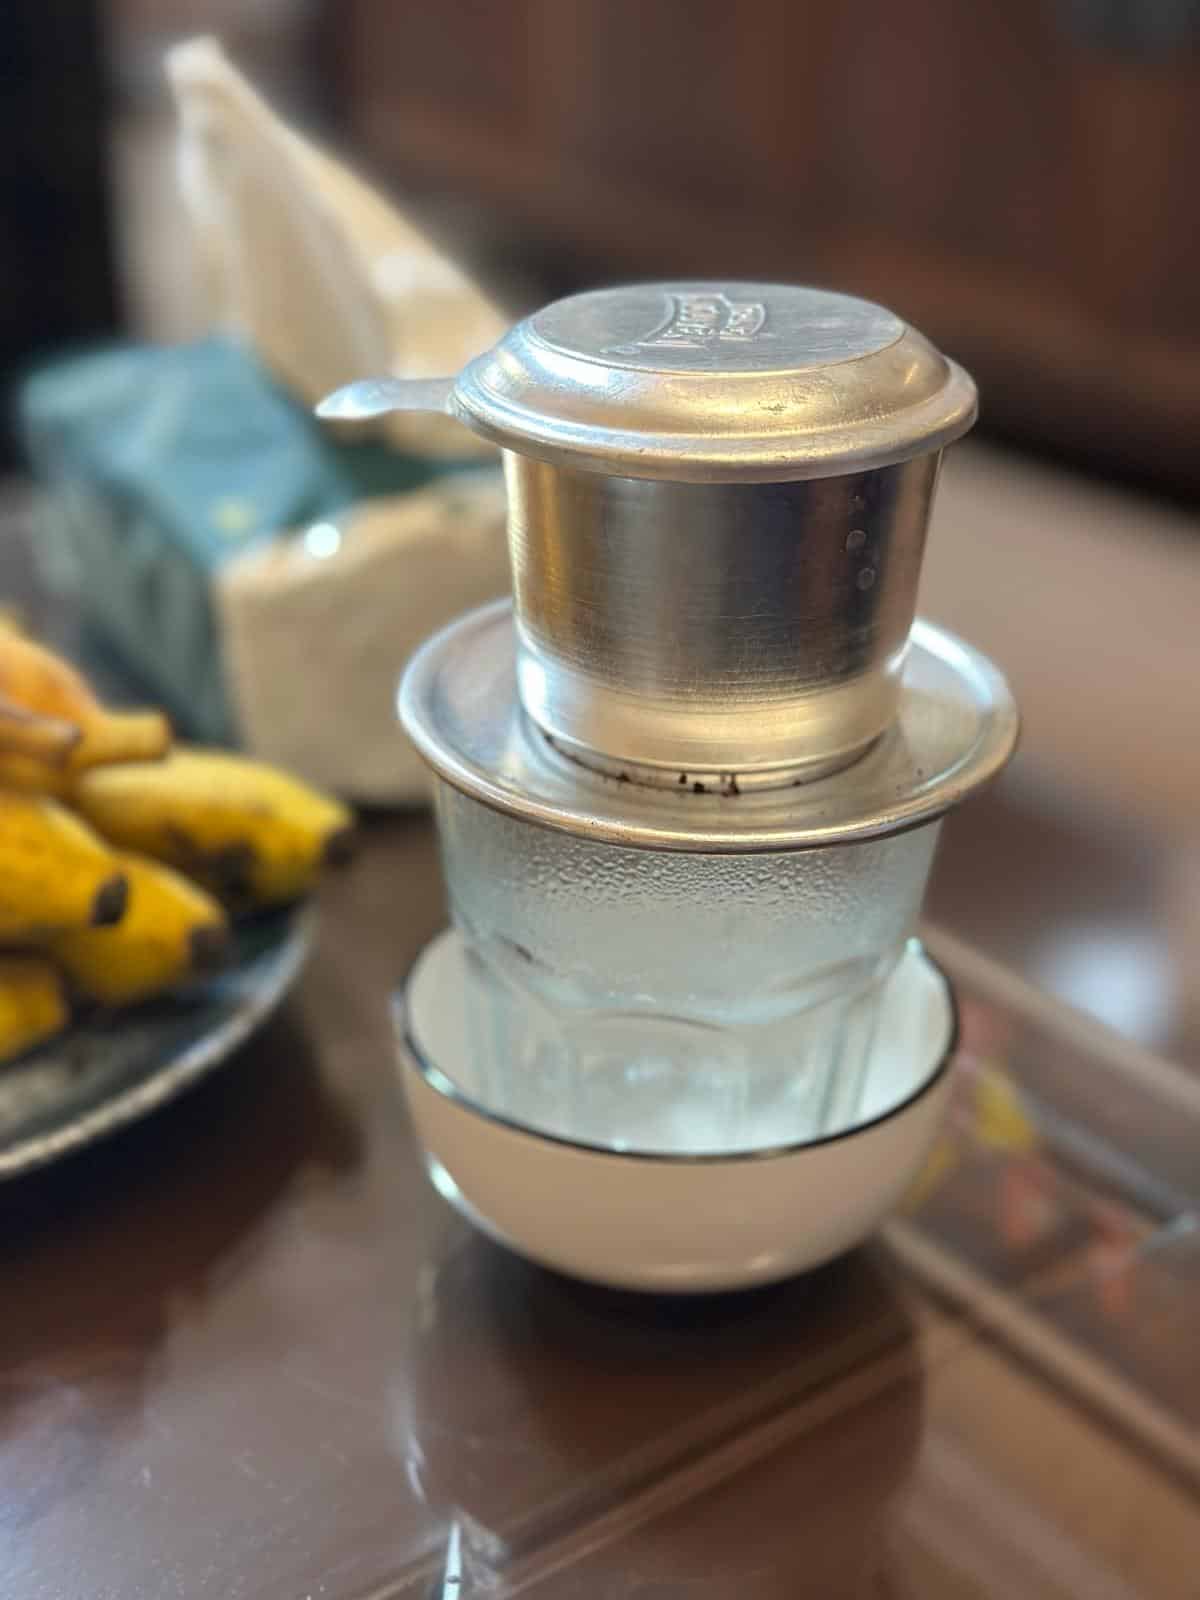 Ein traditioneller vietnamesischer Kaffeefilter liegt auf einem Glas in einer weißen Untertasse. Im Hintergrund sind ein Bündel Bananen und eine Packung Taschentücher leicht verschwommen. Das Ganze steht auf einem glänzenden Holztisch.